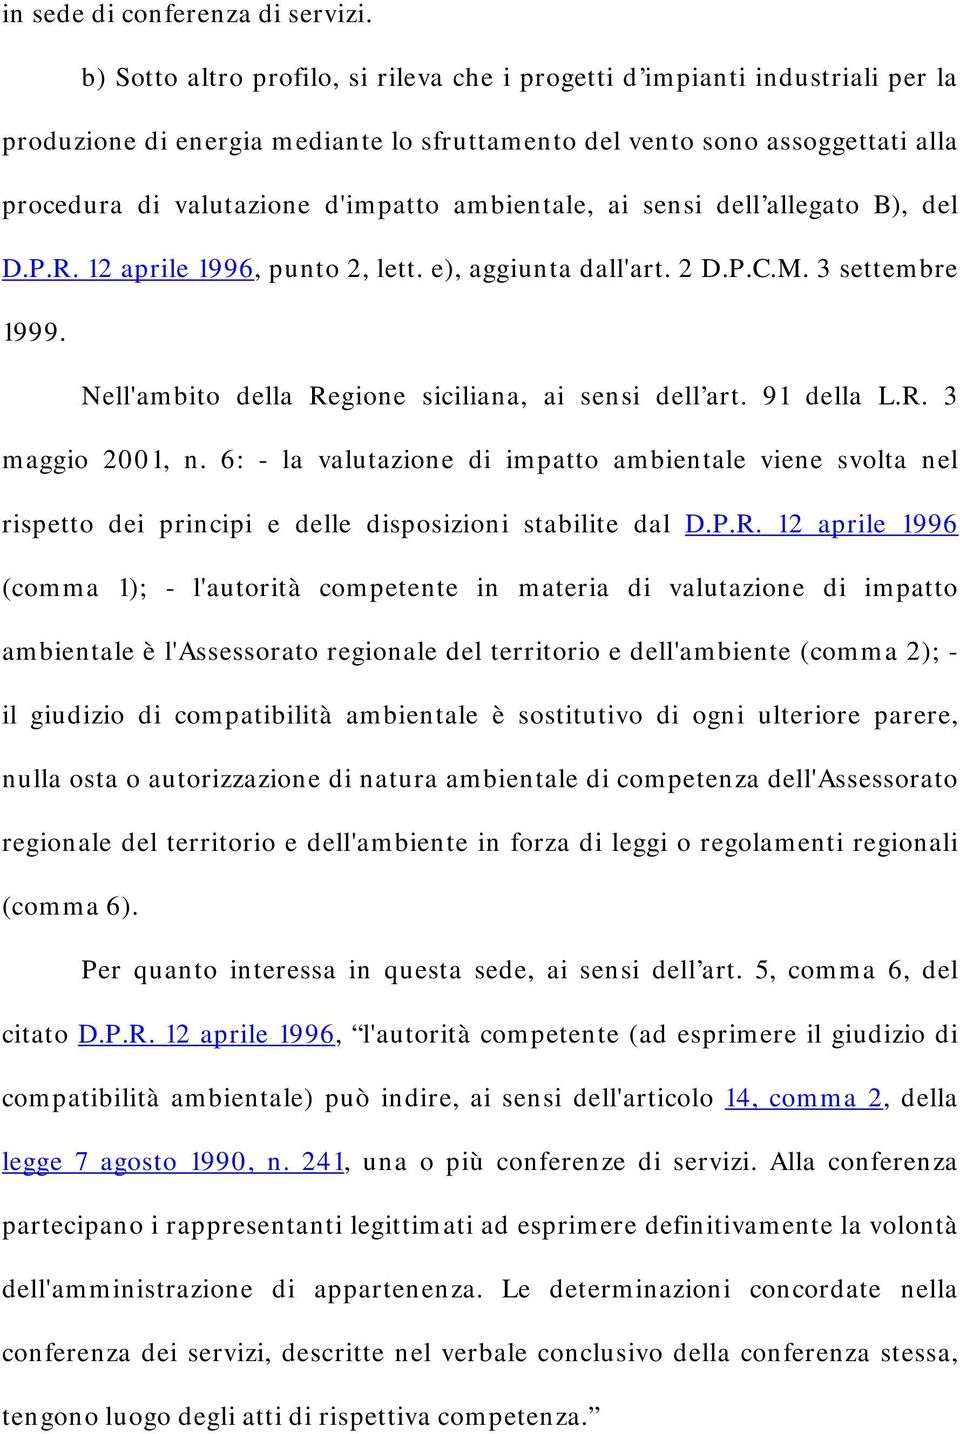 ambientale, ai sensi dell allegato B), del D.P.R. 12 aprile 1996, punto 2, lett. e), aggiunta dall'art. 2 D.P.C.M. 3 settembre 1999. Nell'ambito della Regione siciliana, ai sensi dell art. 91 della L.